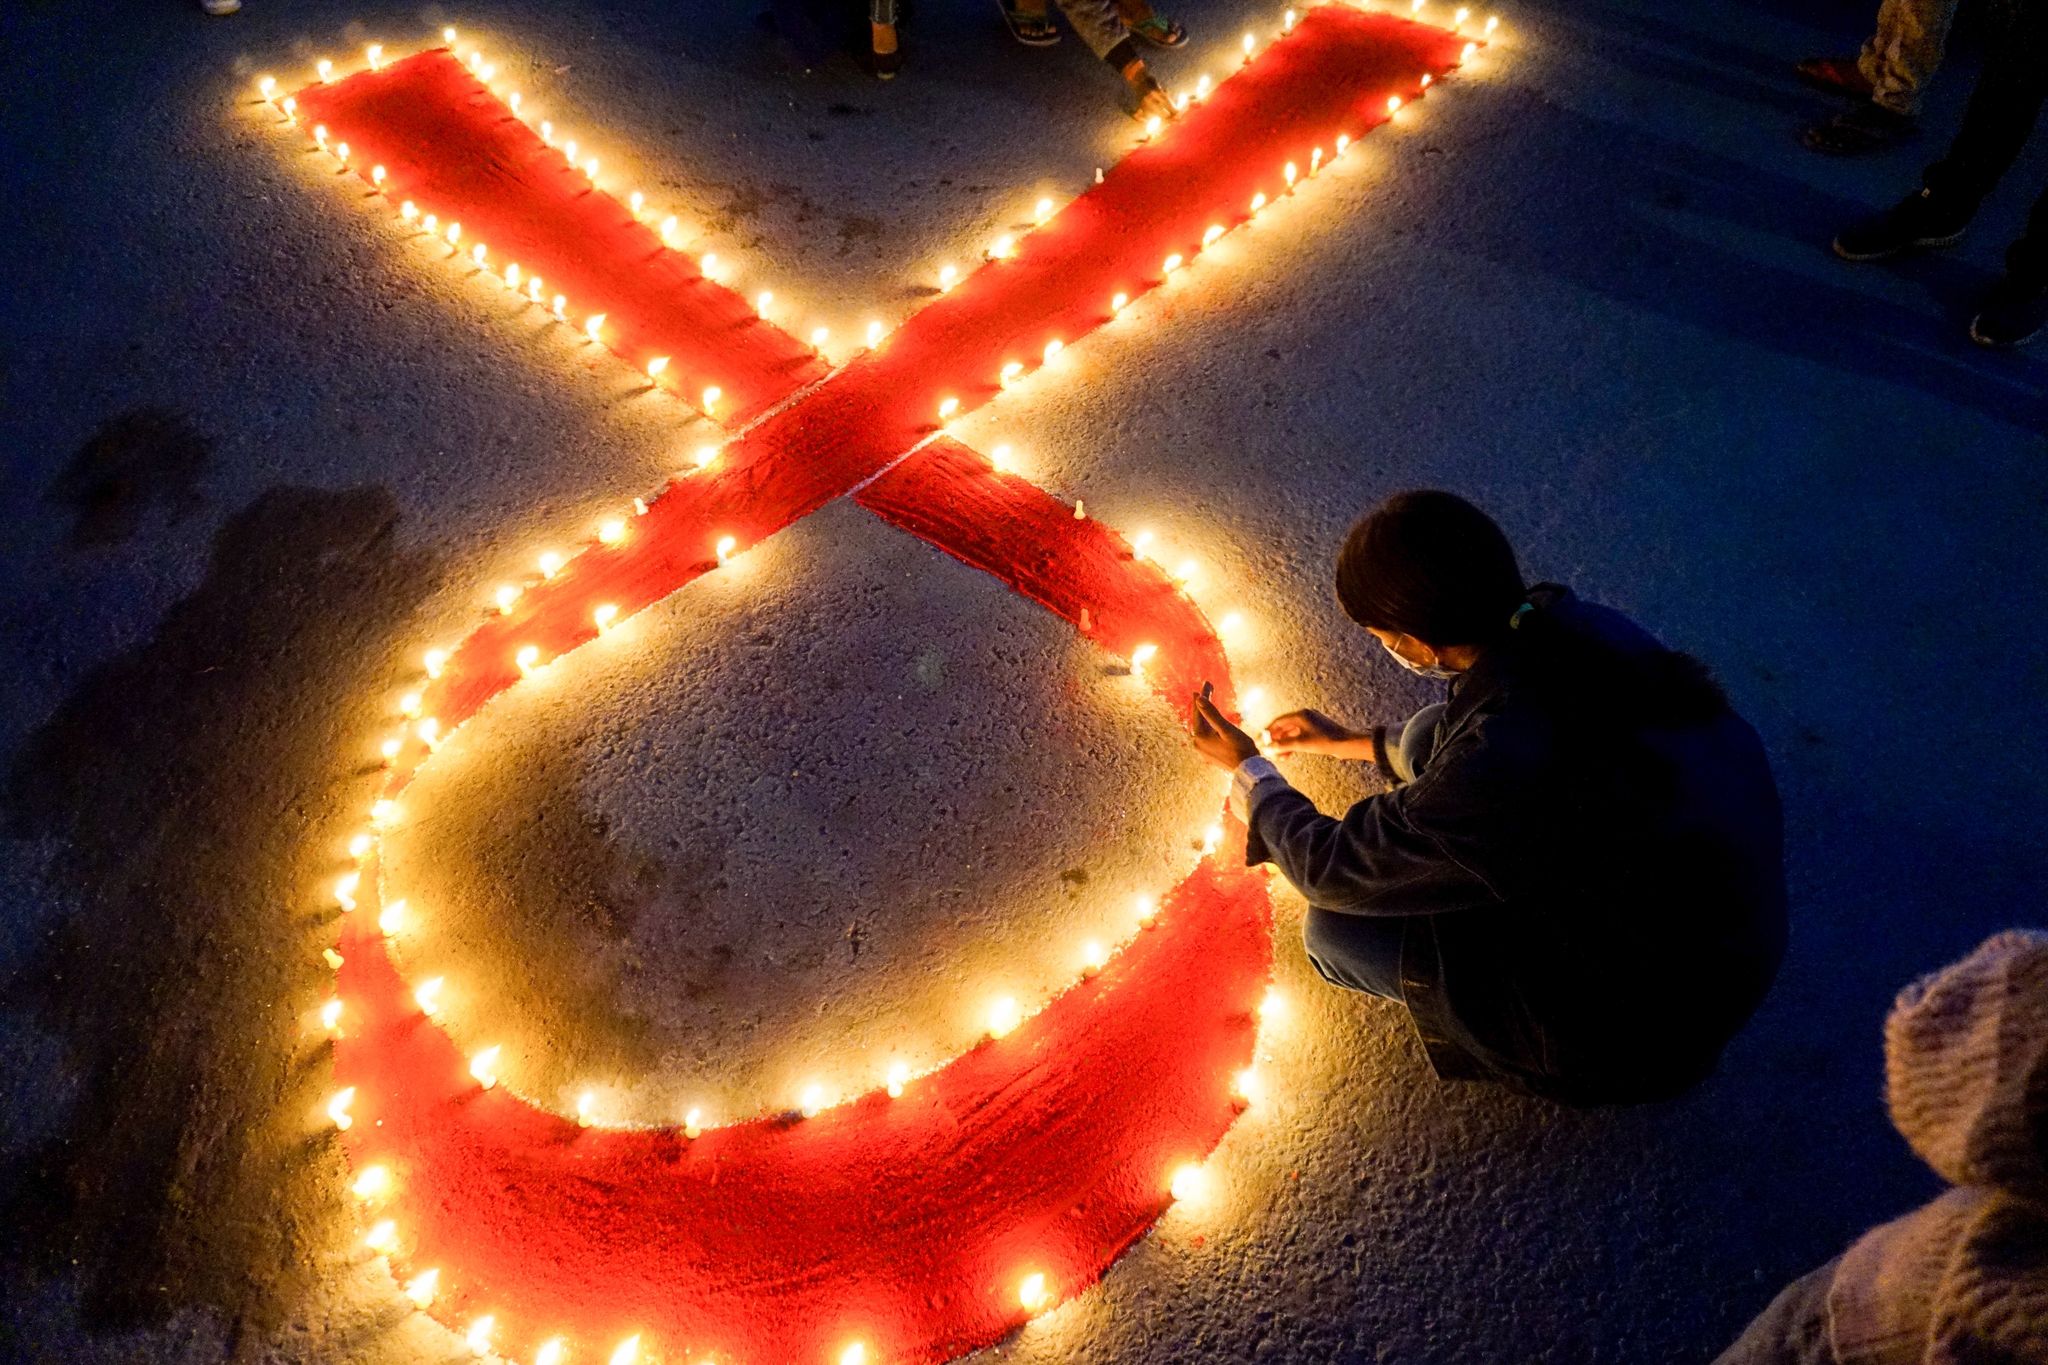 Eine Frau stellt Kerzen auf, die eine rote Schleife formen - ein weltweit anerkanntes Symbol für die Solidarität mit HIV-Infizierten.